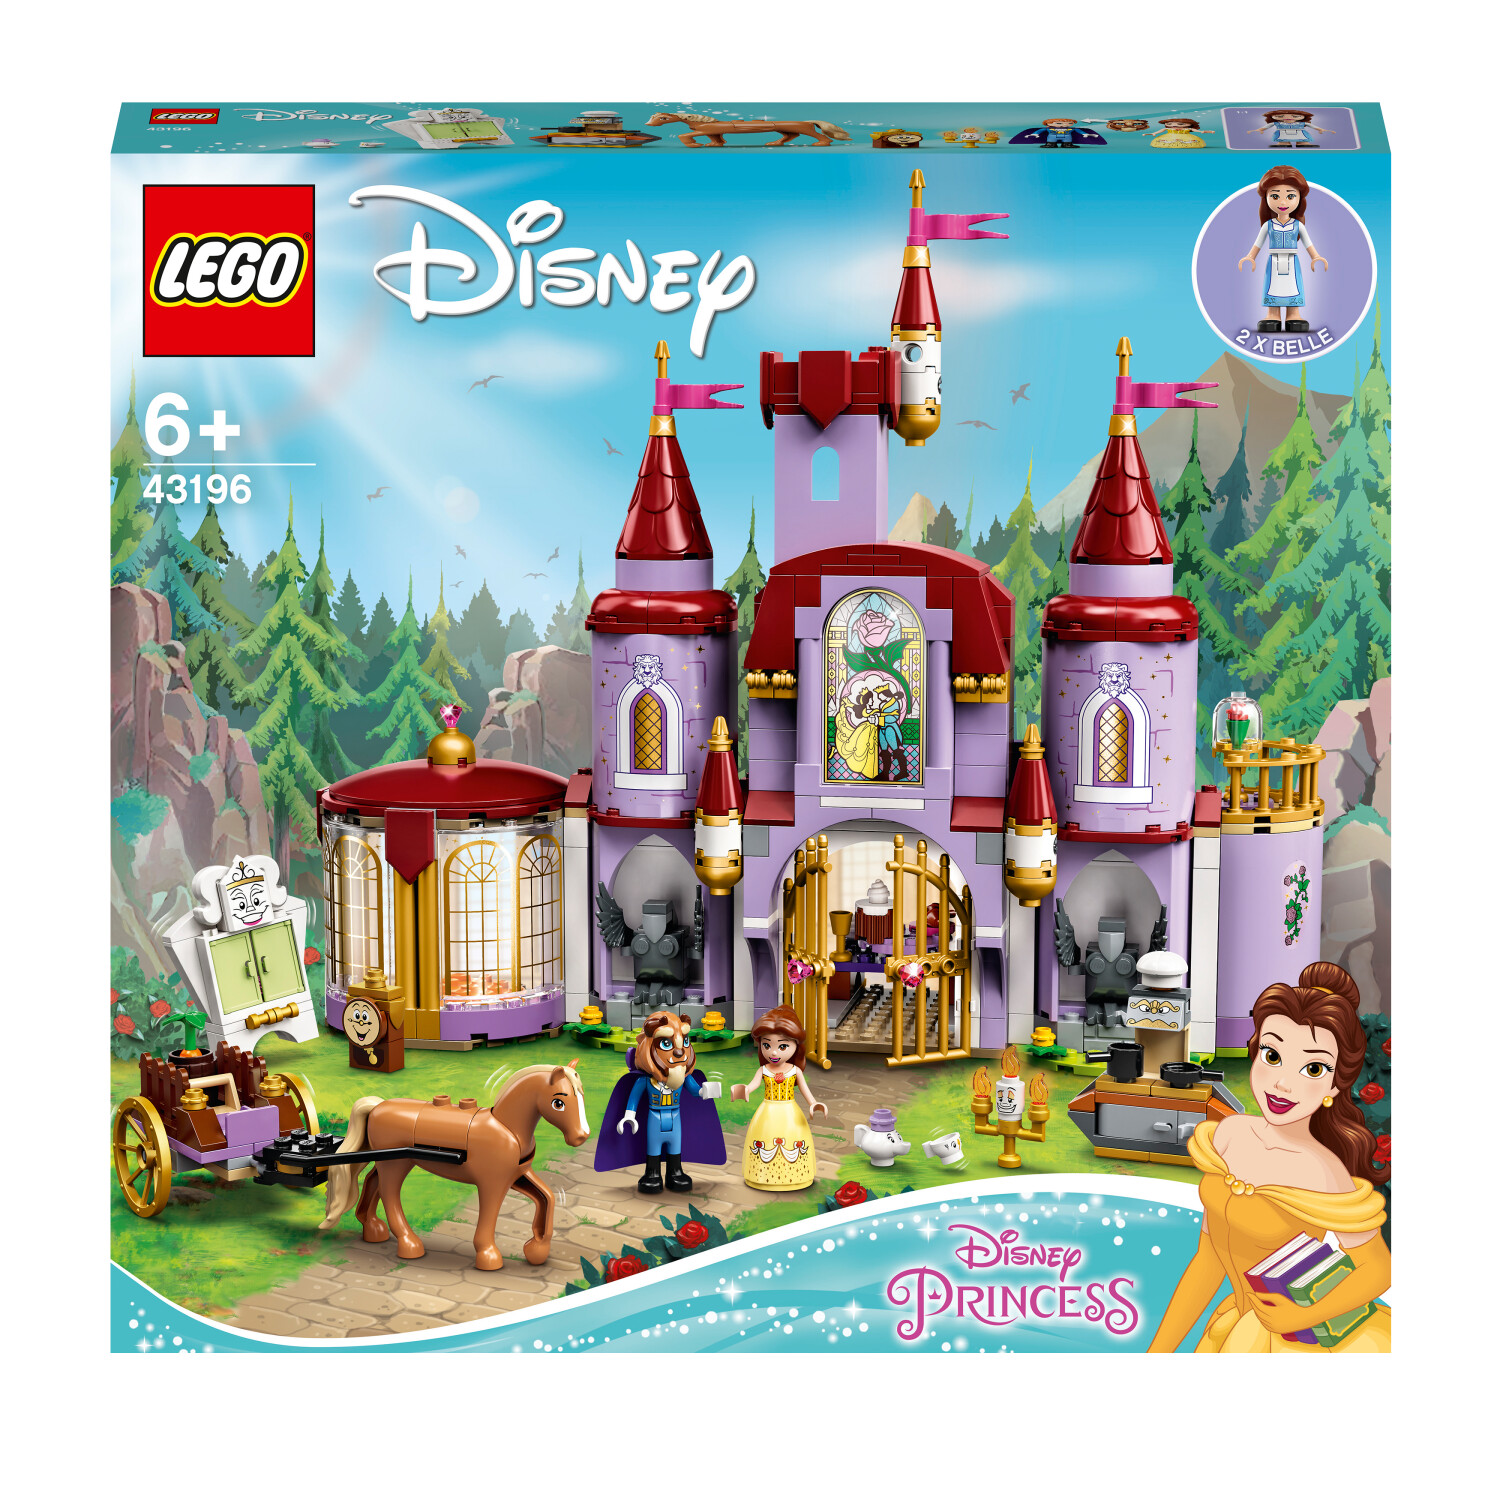 Image of LEGO Disney Princess 43196 Il Castello di Belle e della Bestia, Set delle Principesse con 3 Mini Bamboline